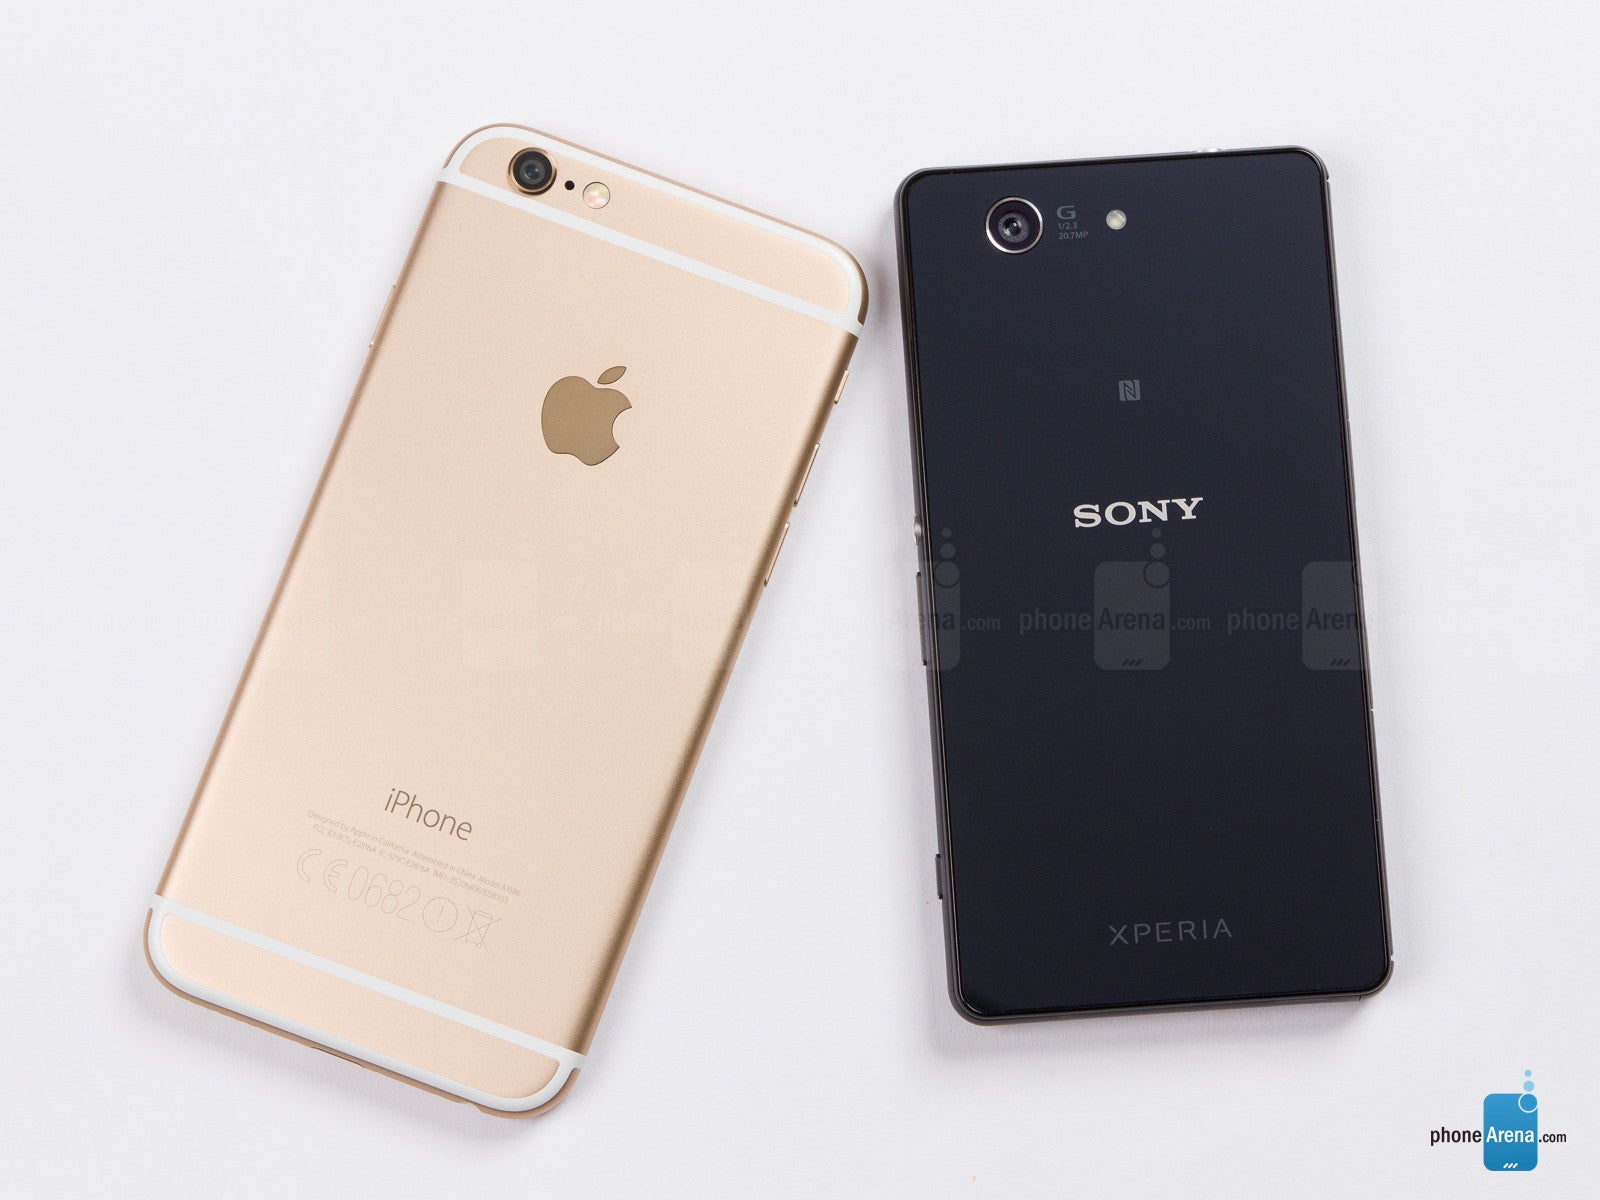 Duwen voor mij briefpapier Apple iPhone 6 vs Sony Xperia Z3 Compact - PhoneArena